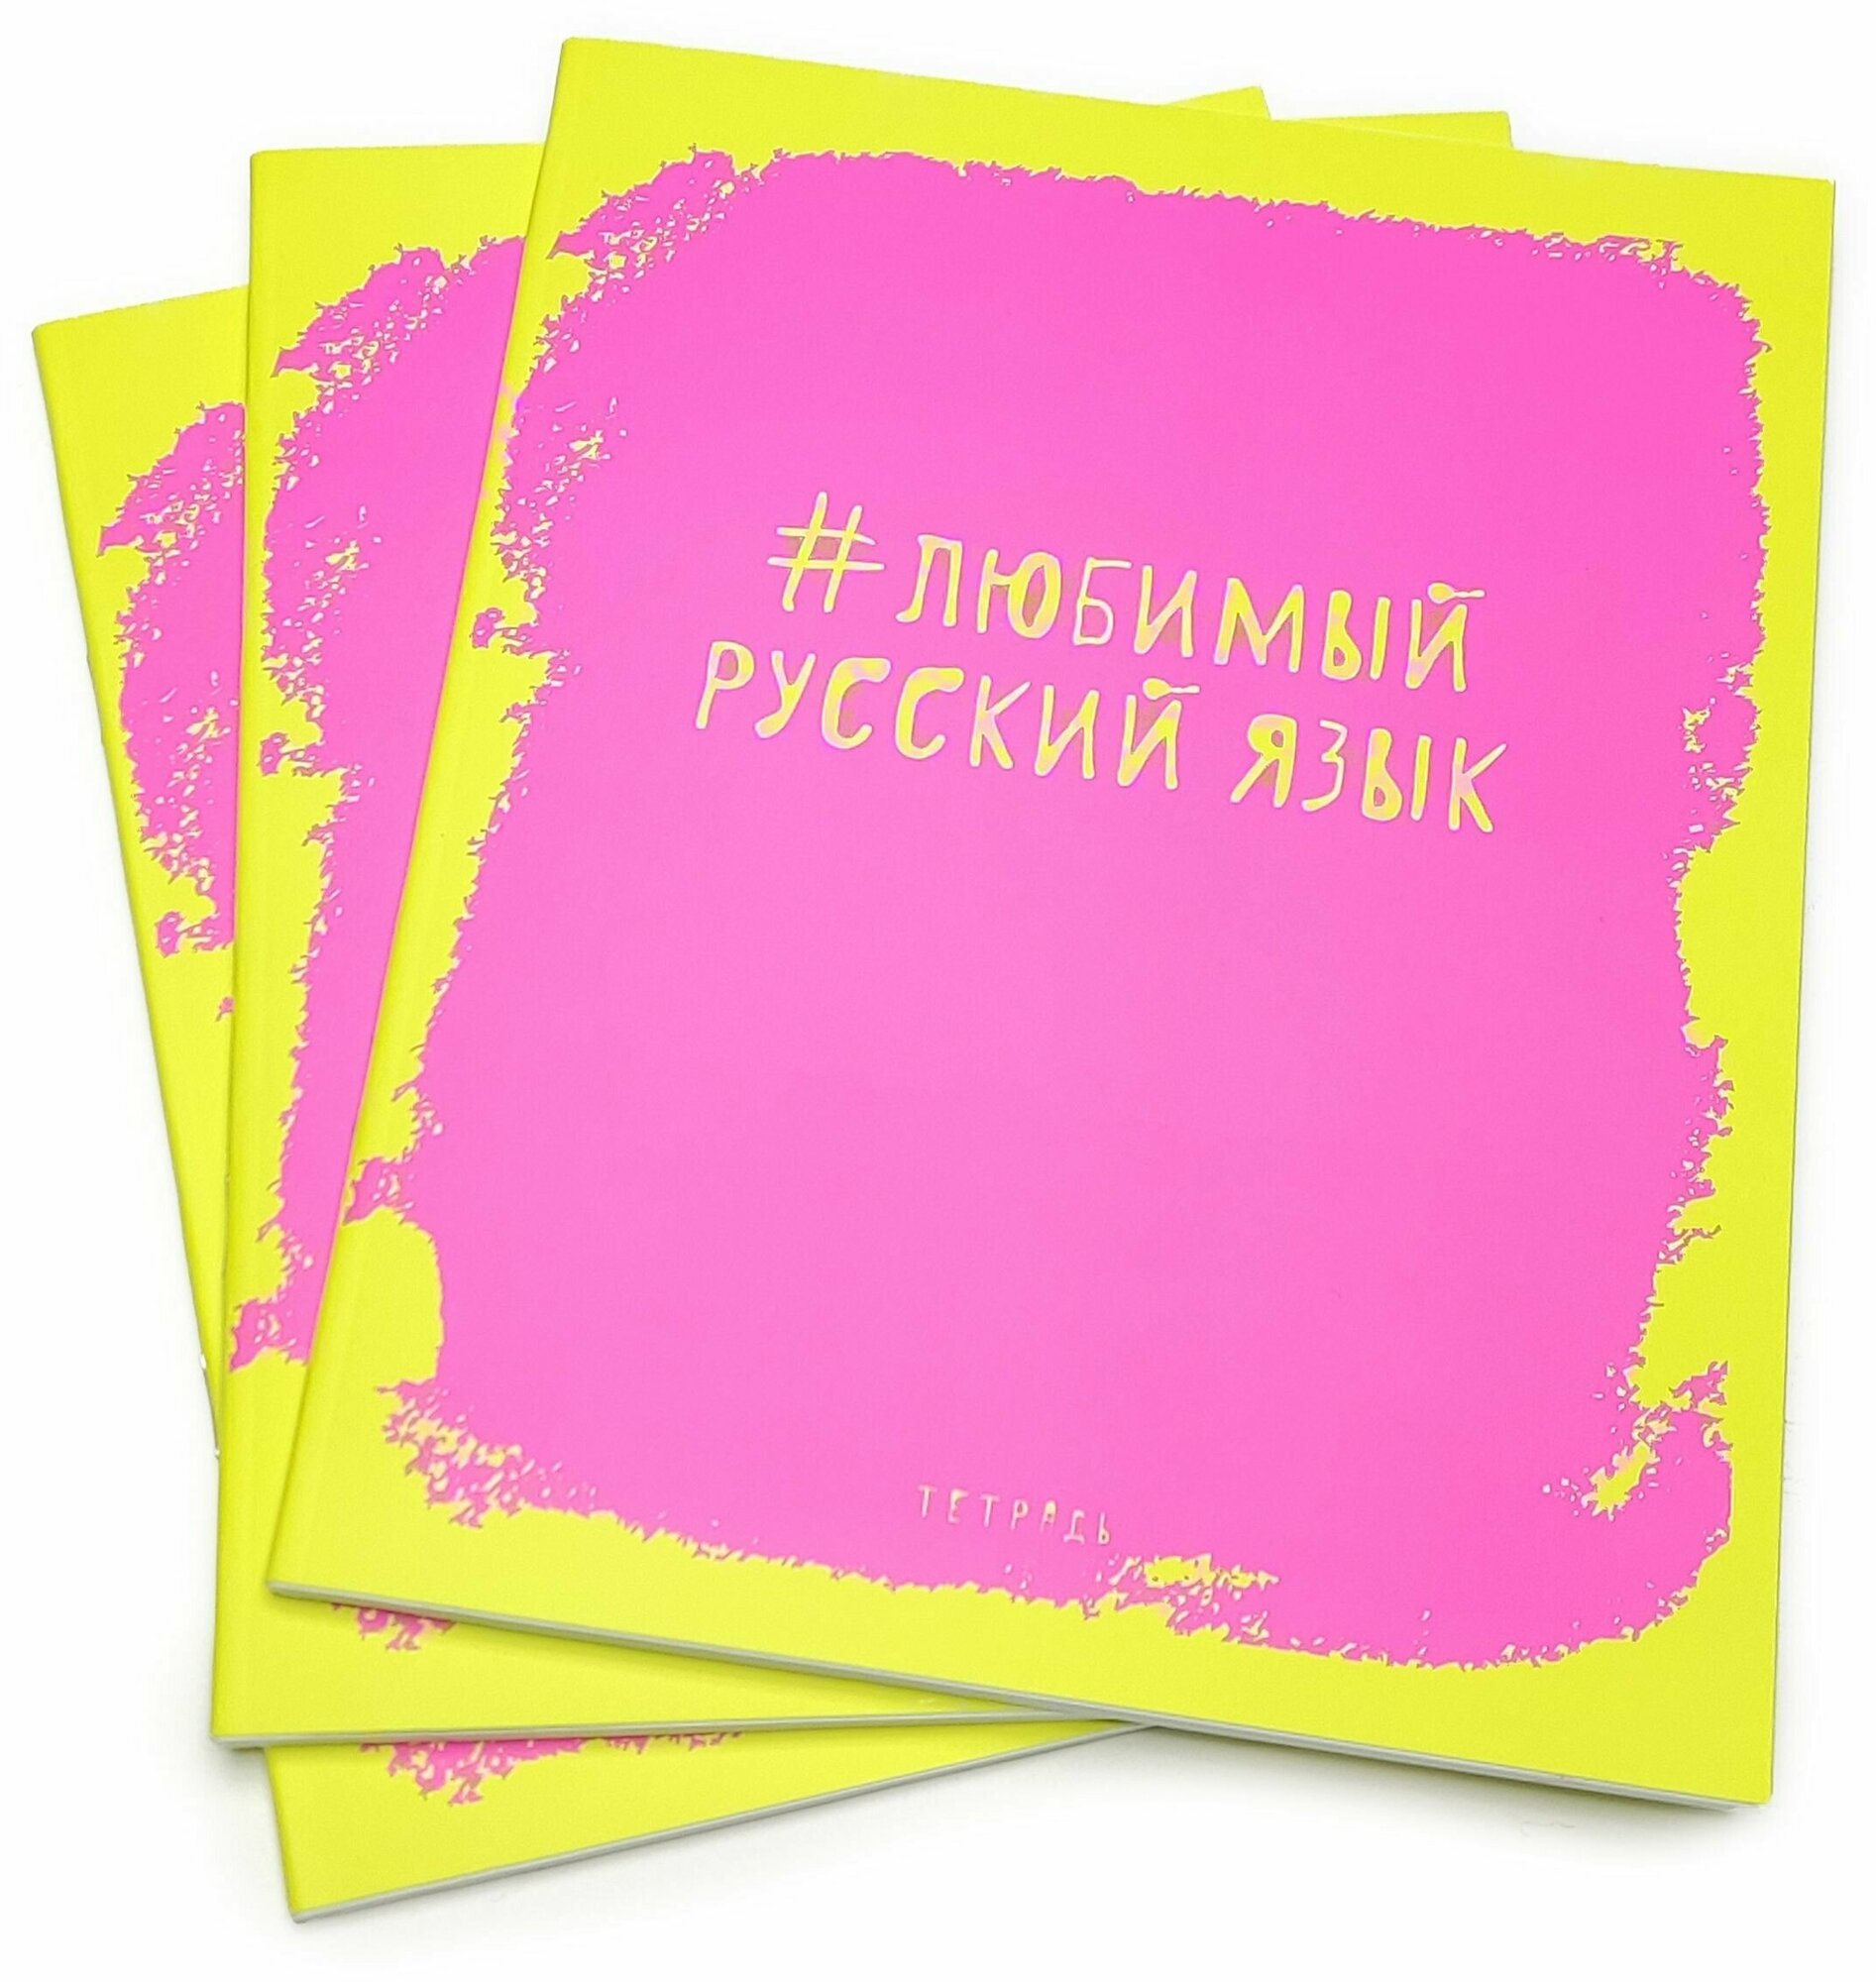 Тетрадь общая предметная Русский Язык, Яркая наука 48 листов, 3 штуки в упаковке. Поля.